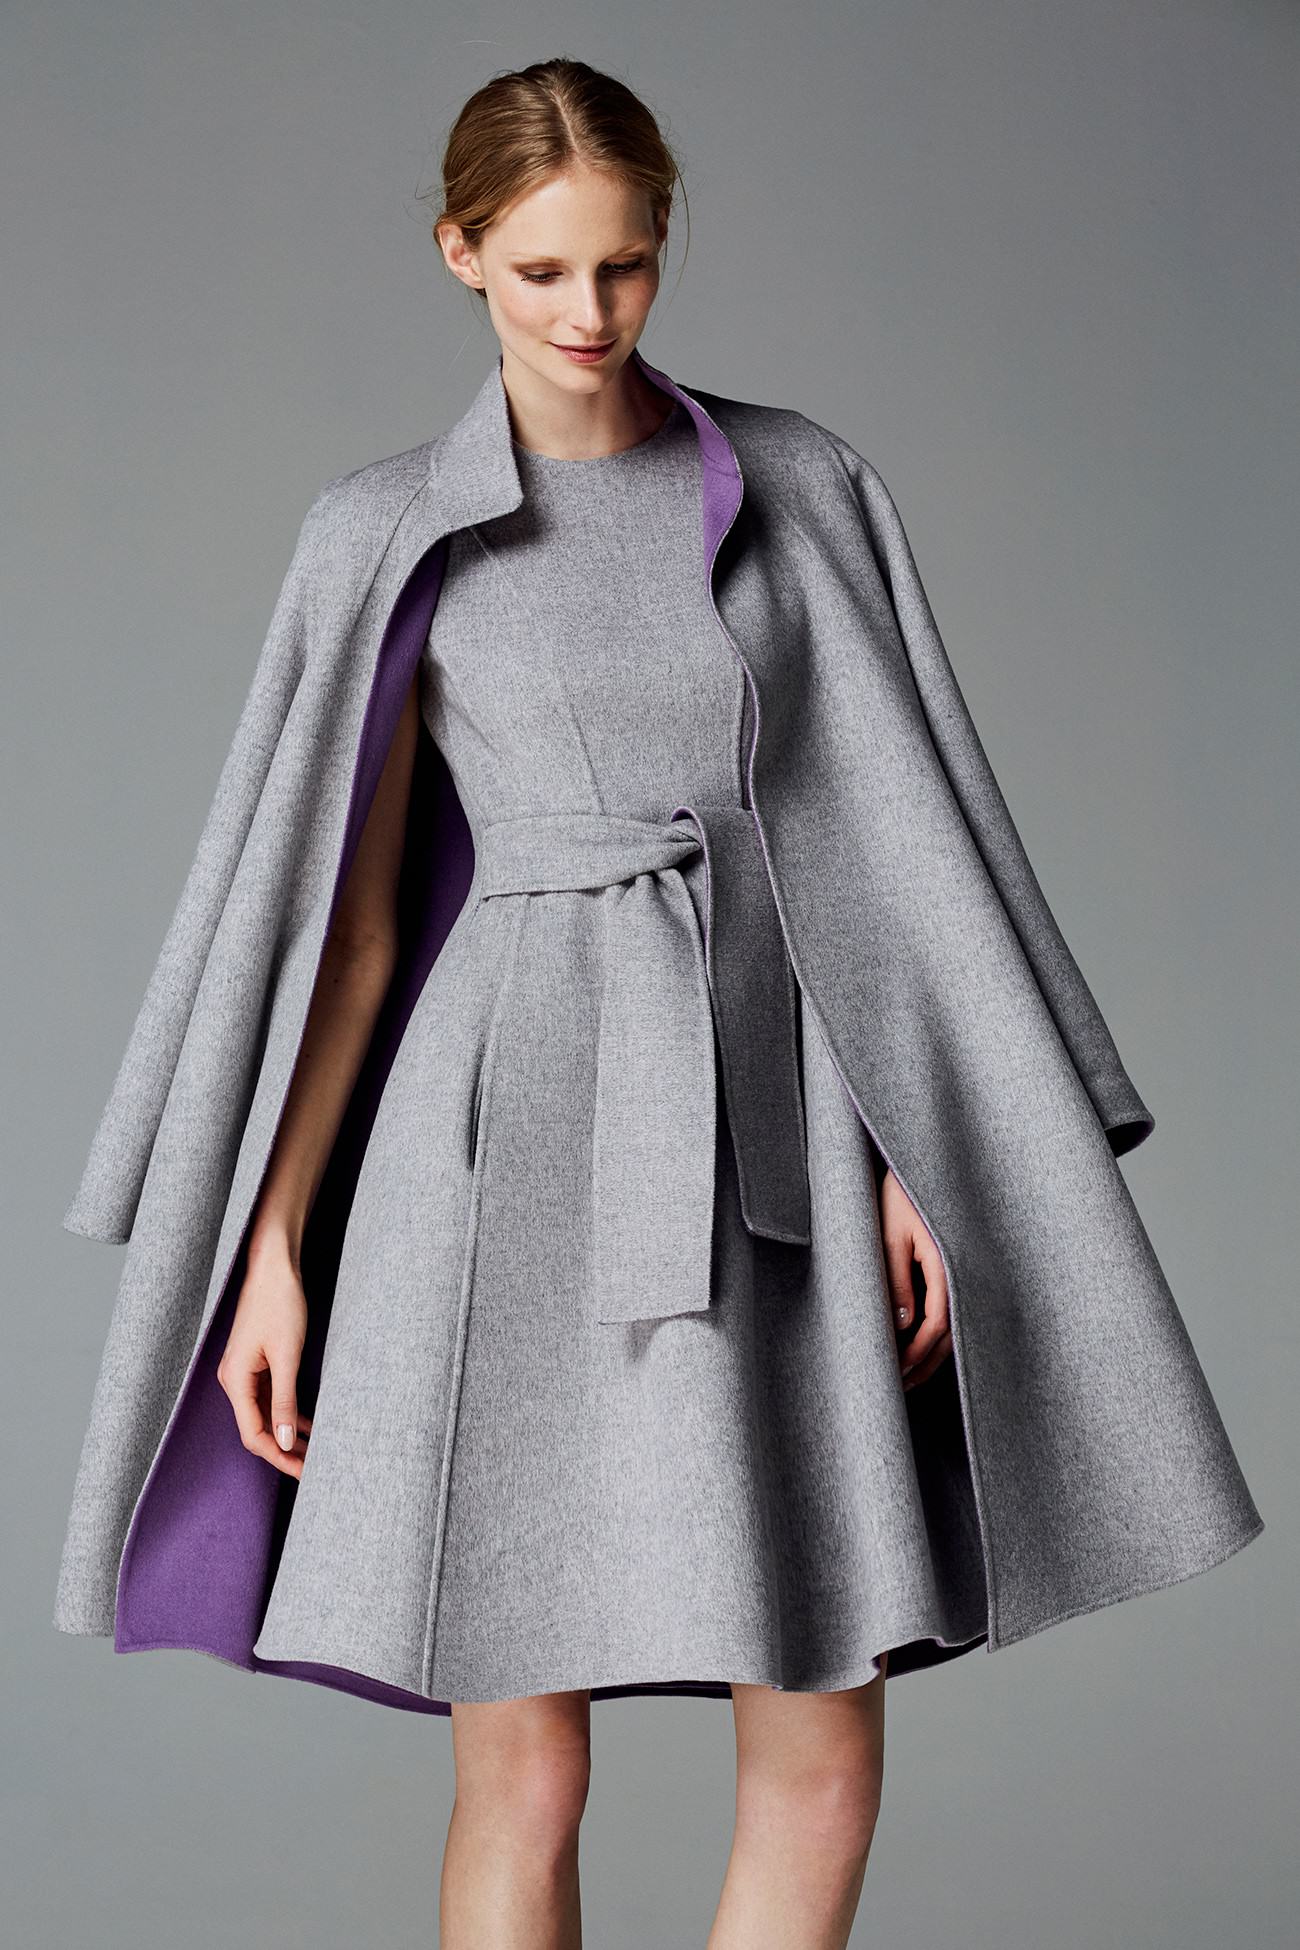 CH Carolina Herrera Fall 2016 grey wool coat and dress